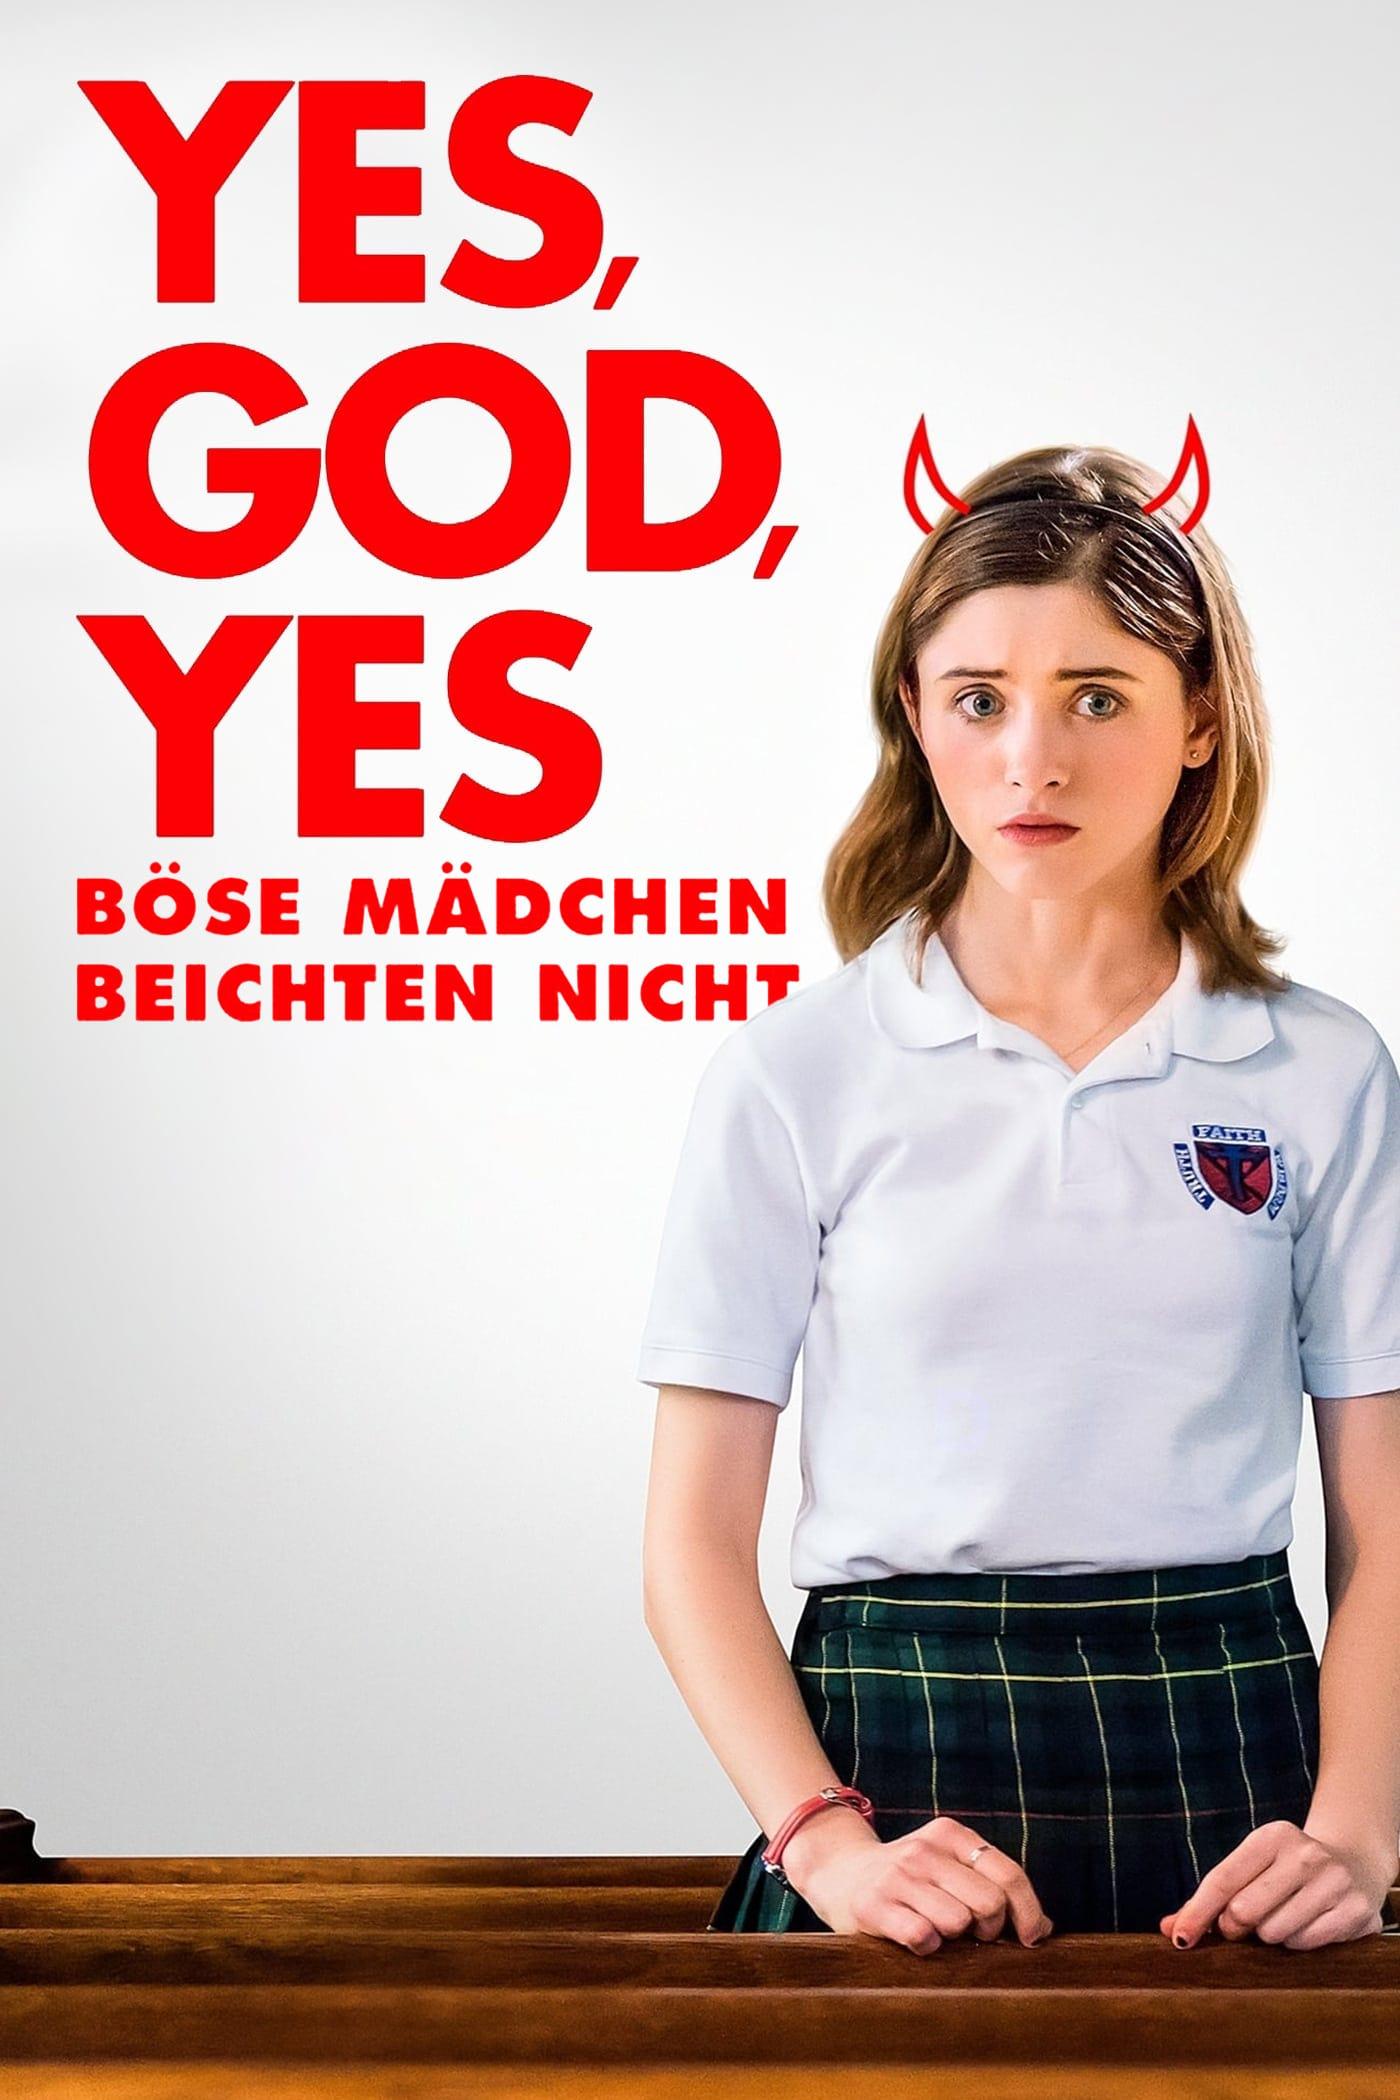 Yes, God, Yes - Böse Mädchen beichten nicht poster